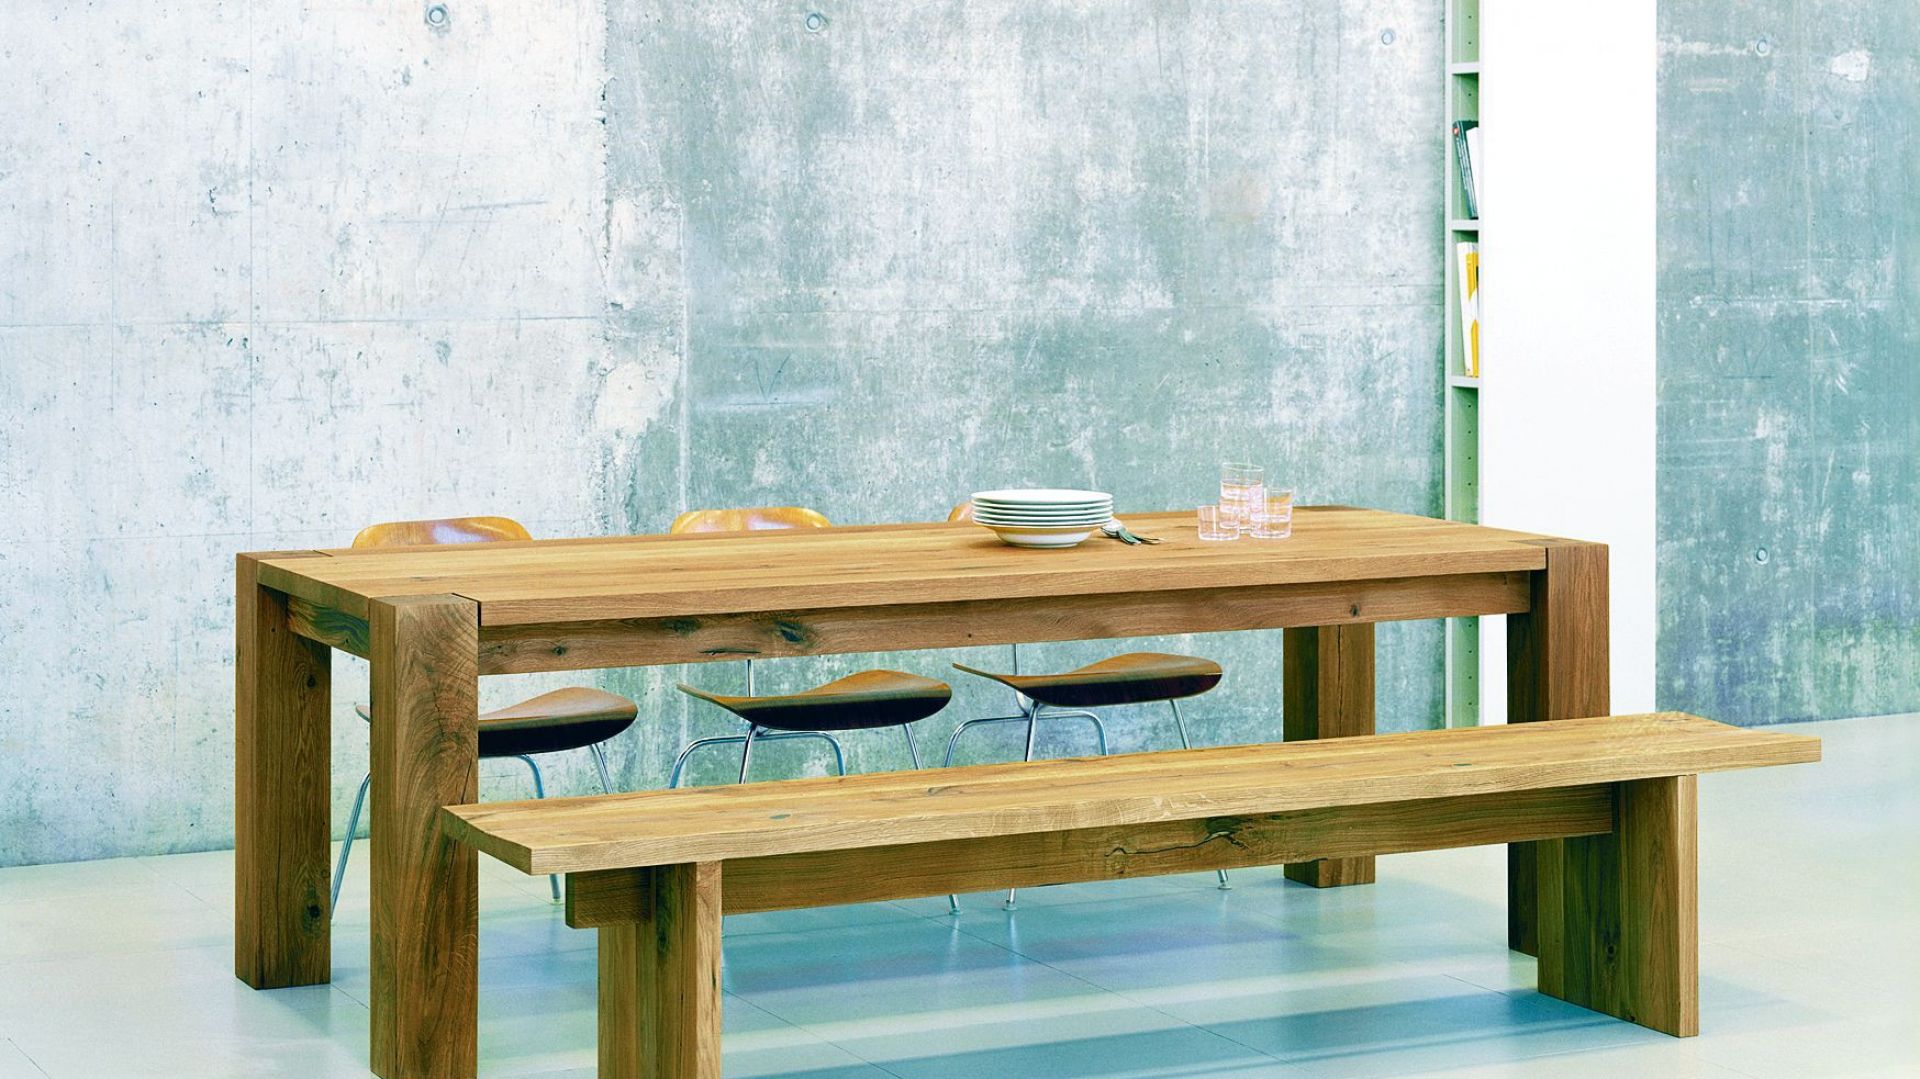 Kult siedzenia przy stole - na krześle lub ławie